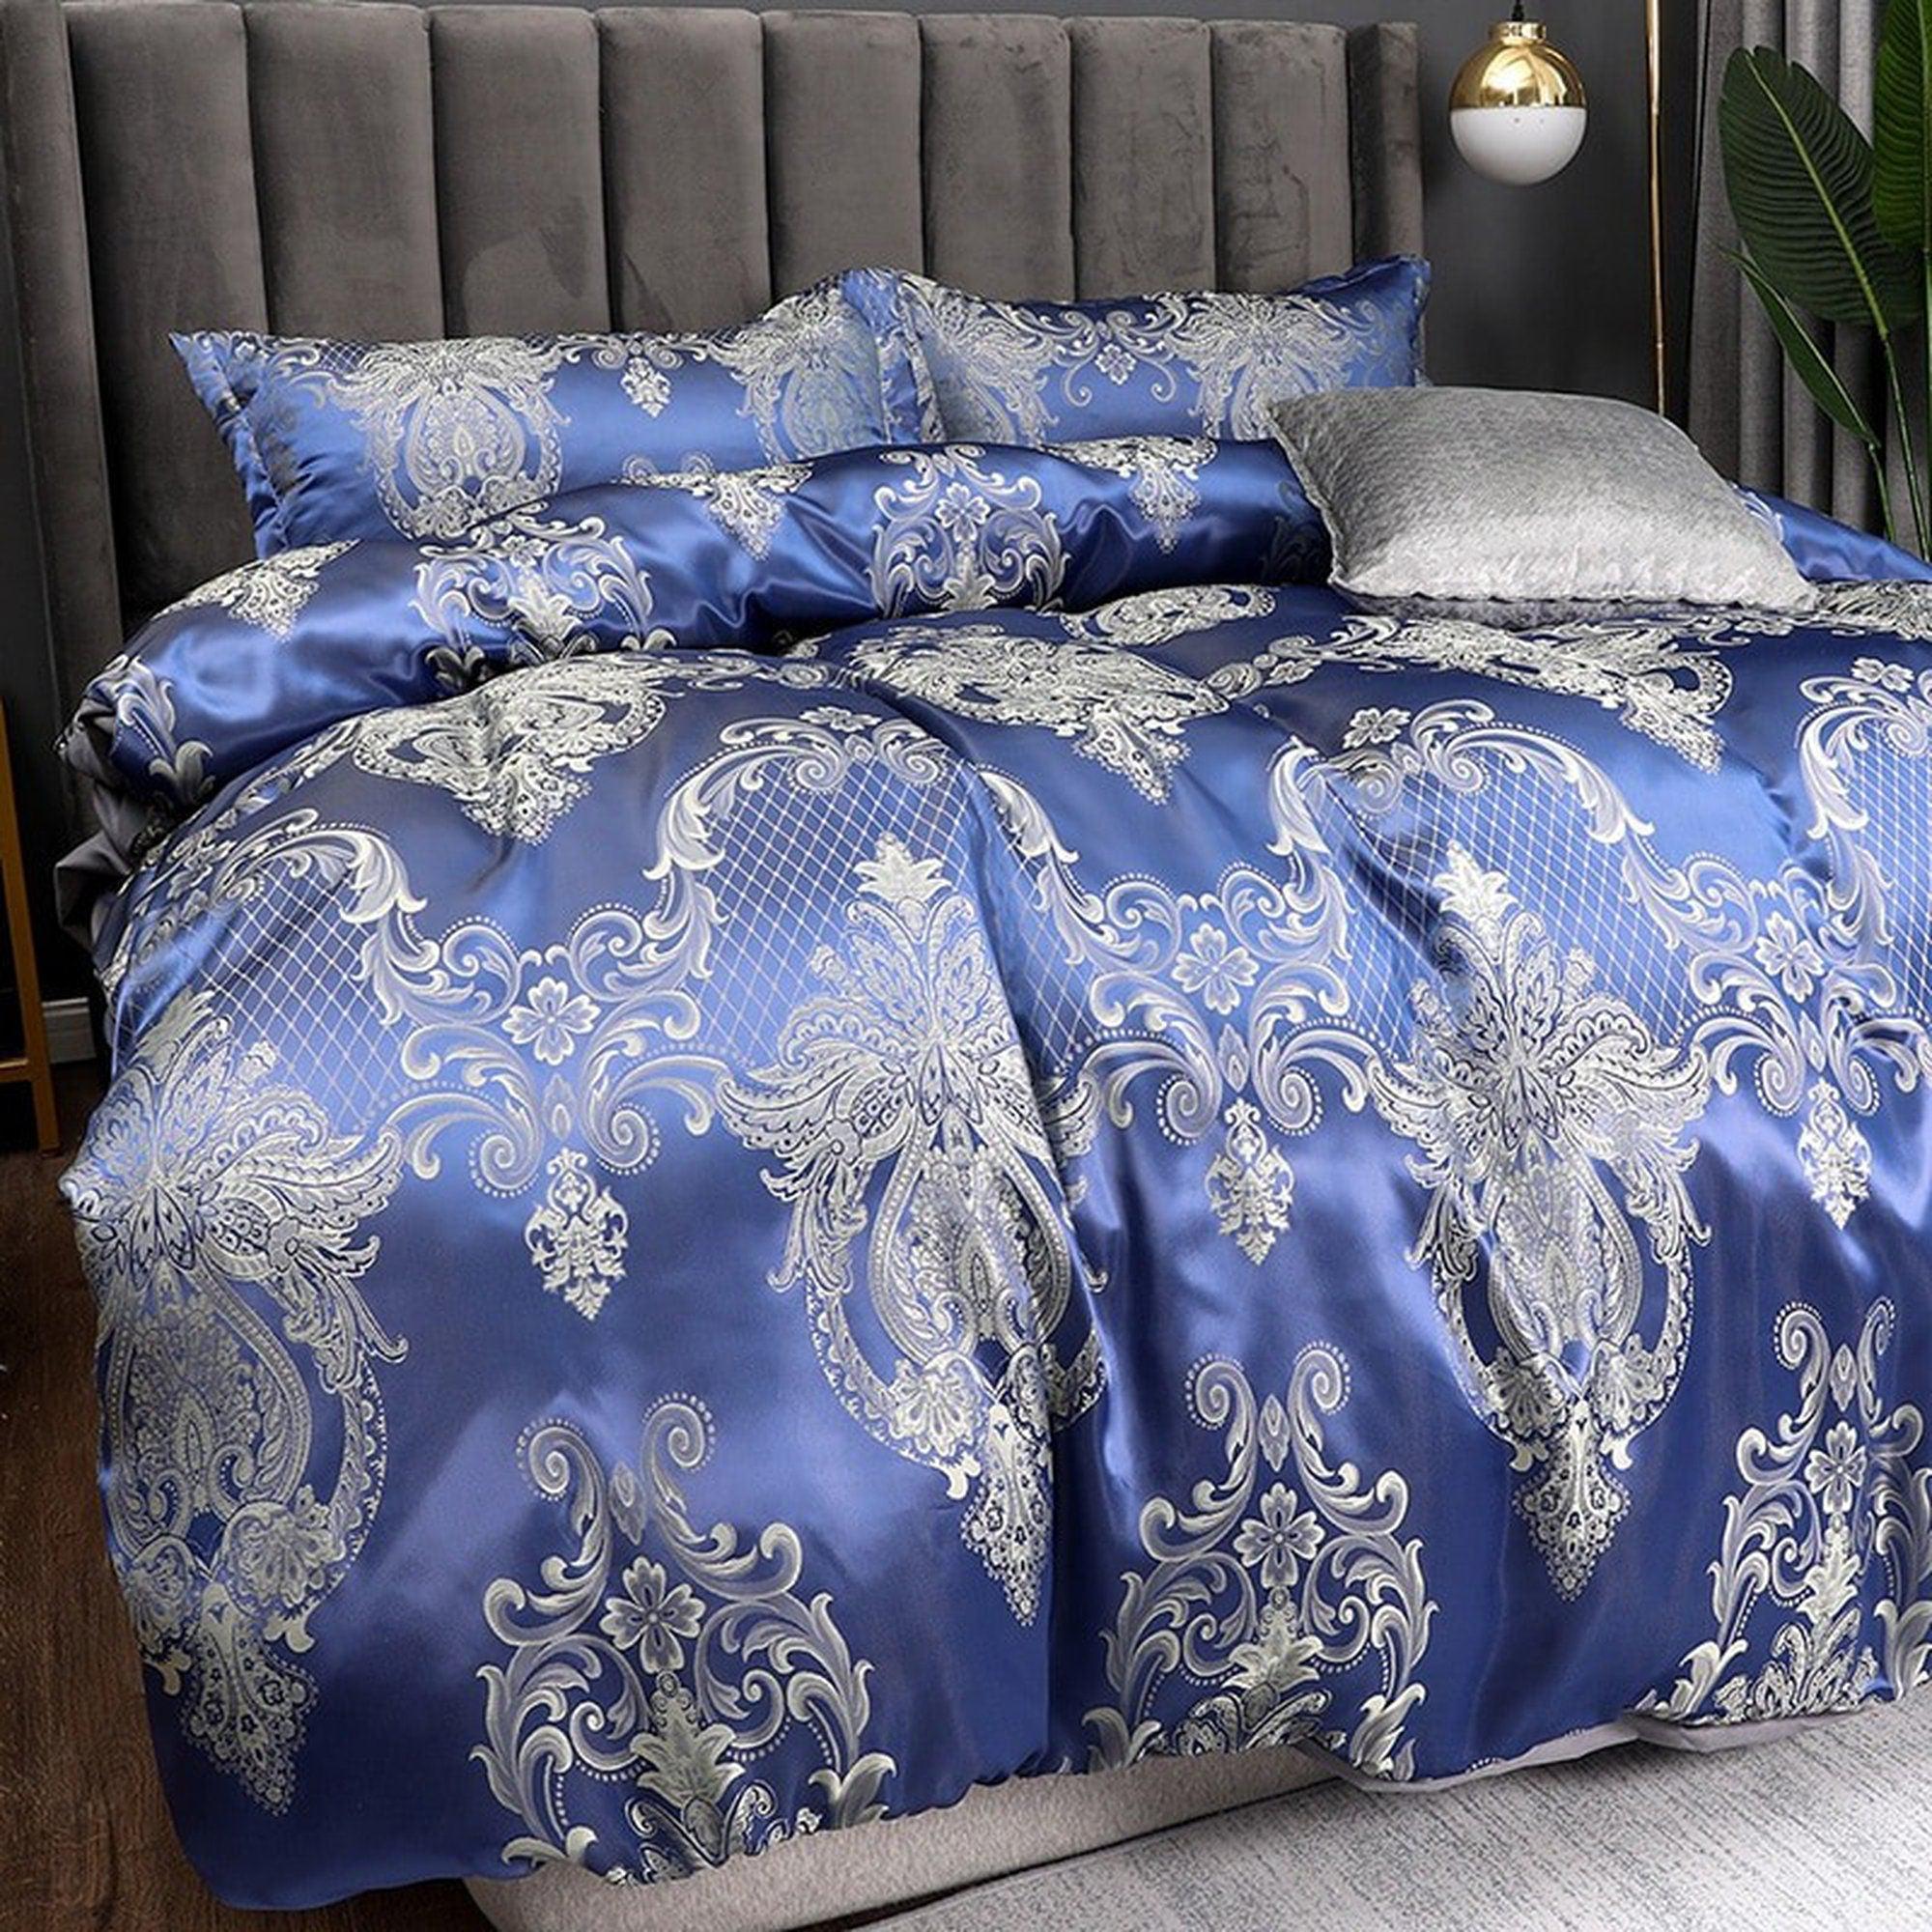 http://daintyduvet.com/cdn/shop/files/daintyduvet-sapphire-blue-luxury-bedding-made-with-silky-jacquard-fabric-embroidered-duvet-cover-set-designer-bedding-aesthetic-duvet-king-queen-full-1.jpg?v=1692025650